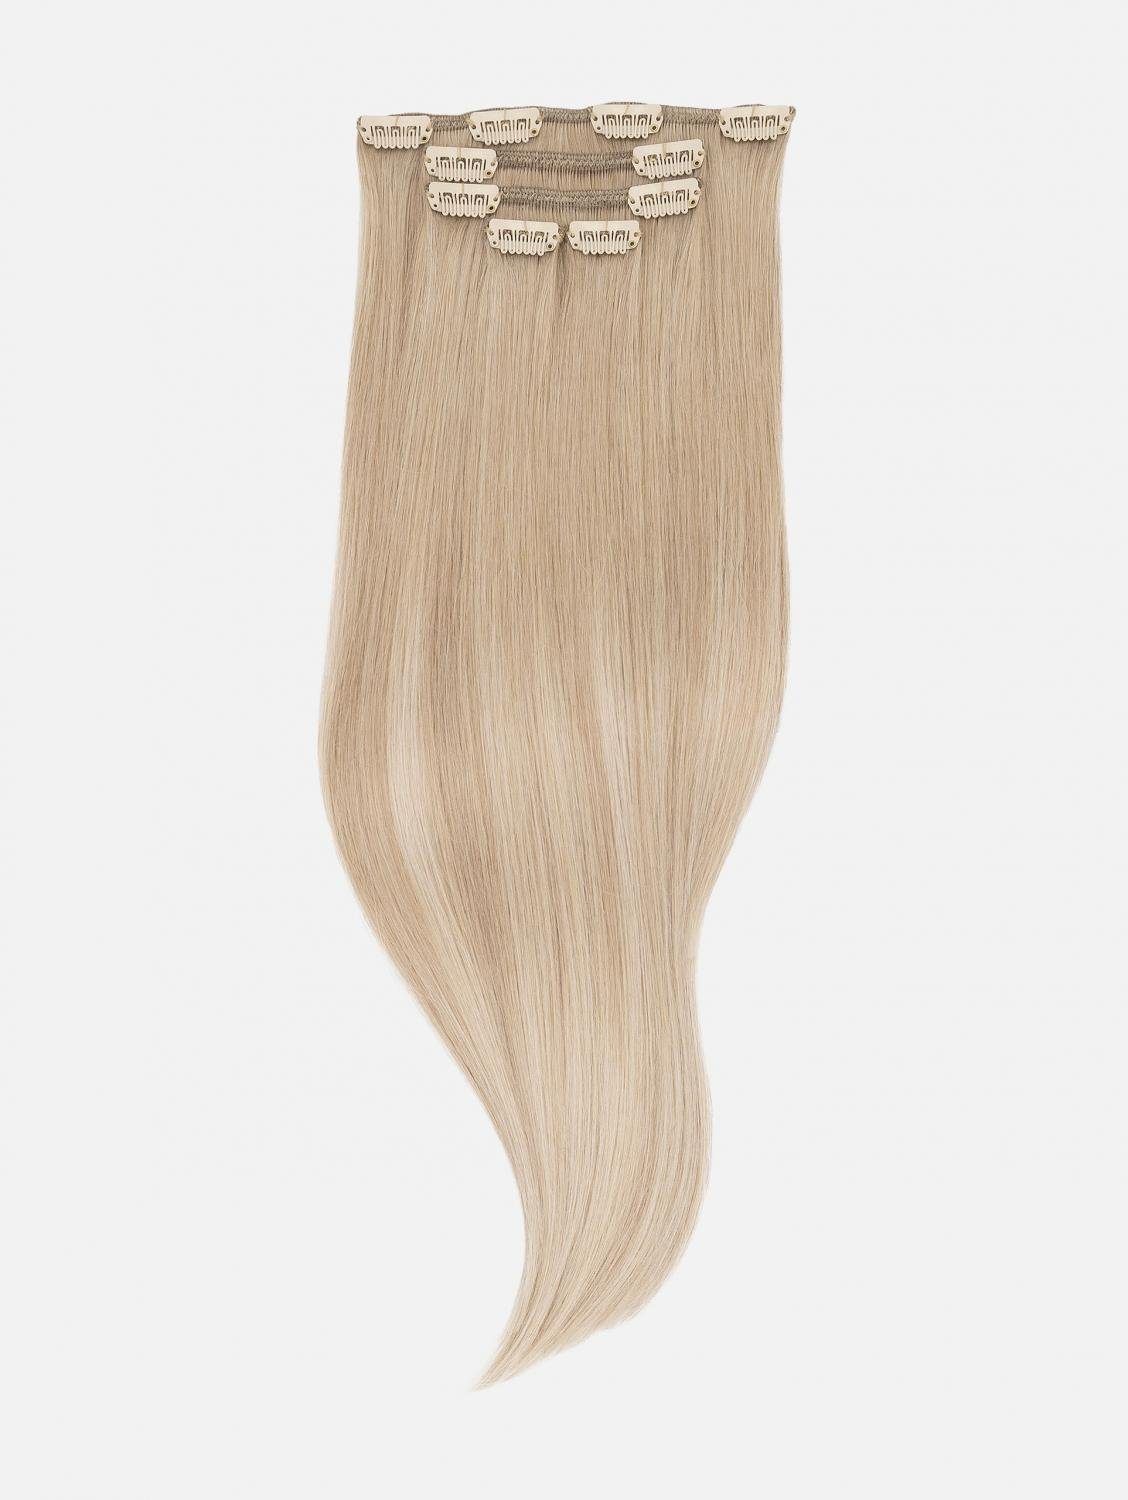 EH - Haarverlängerung Clip-In Echthaar Echthaar 50cm, NATURAL Extensions #B18/24A Balayage (Honey Blonde - 5-teilig Echthaar-Extension Balayage)